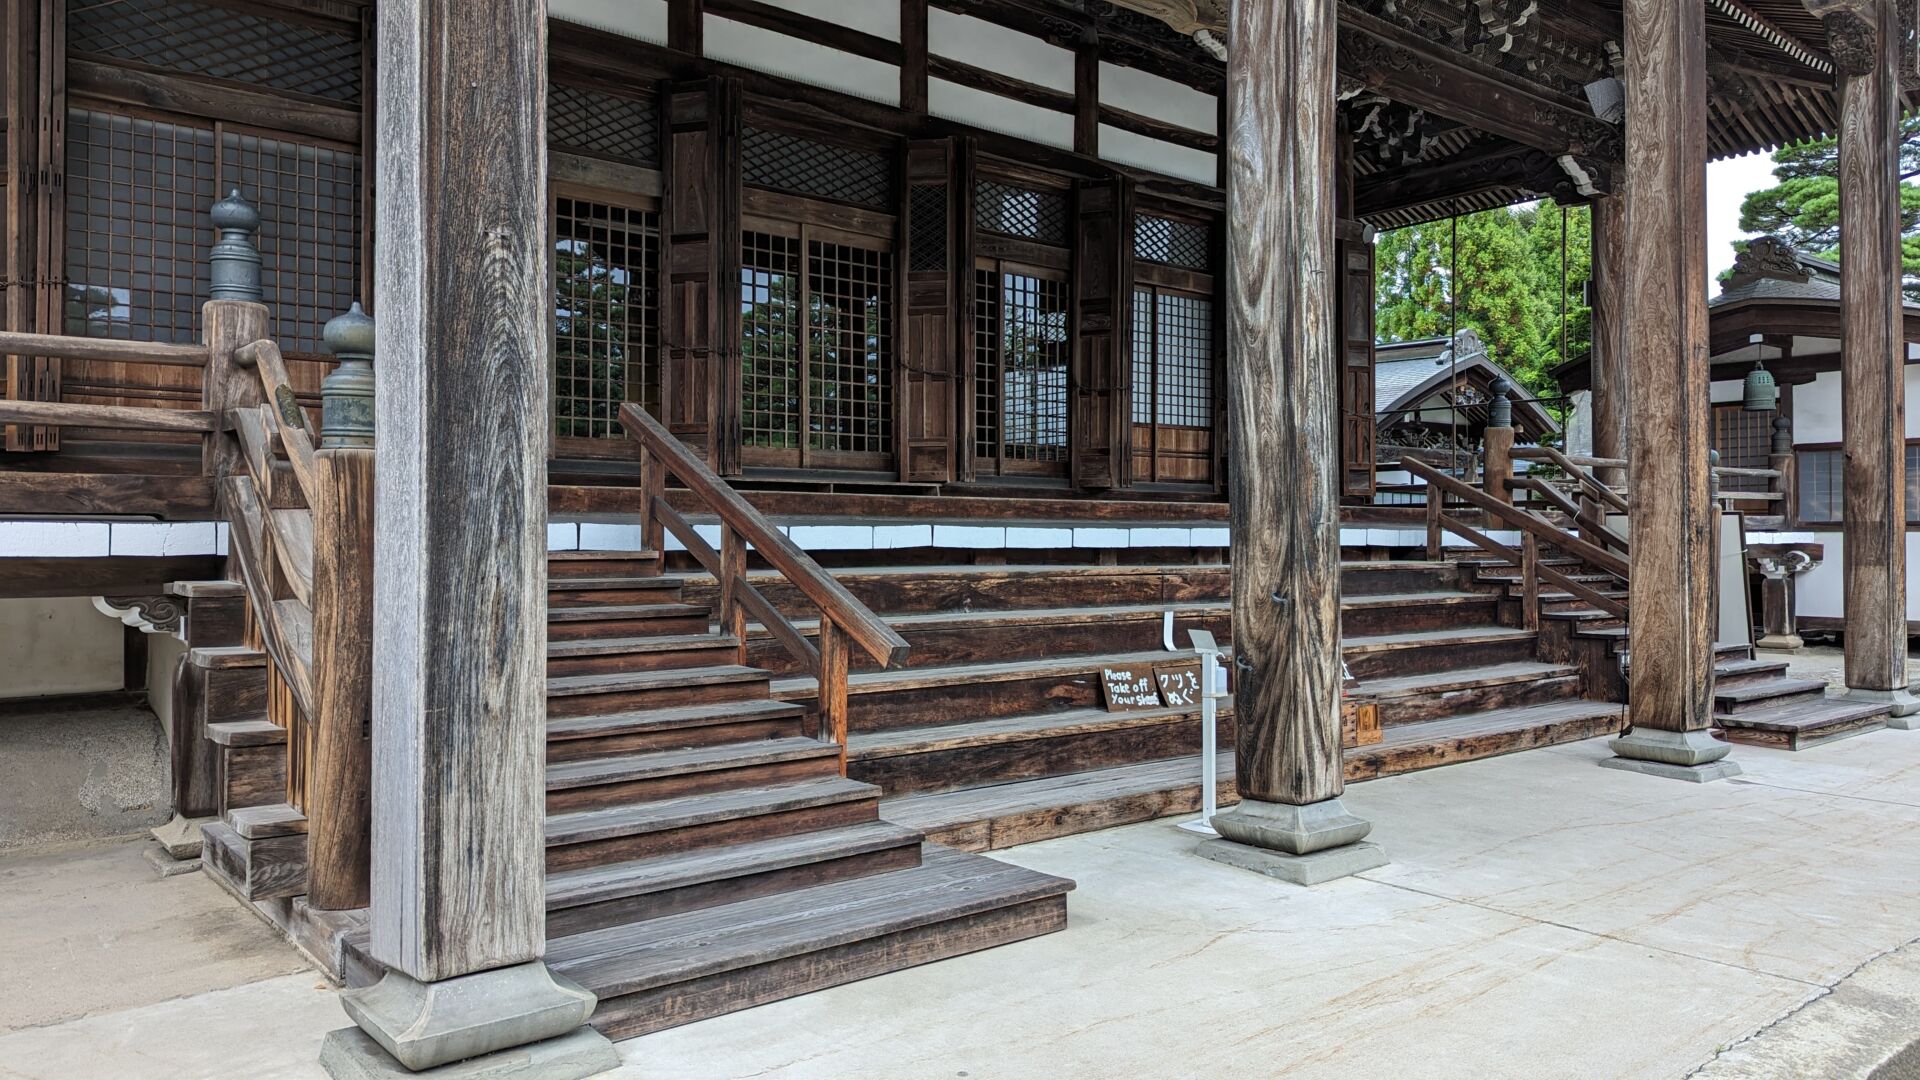 Hida-Furukawa-Temples